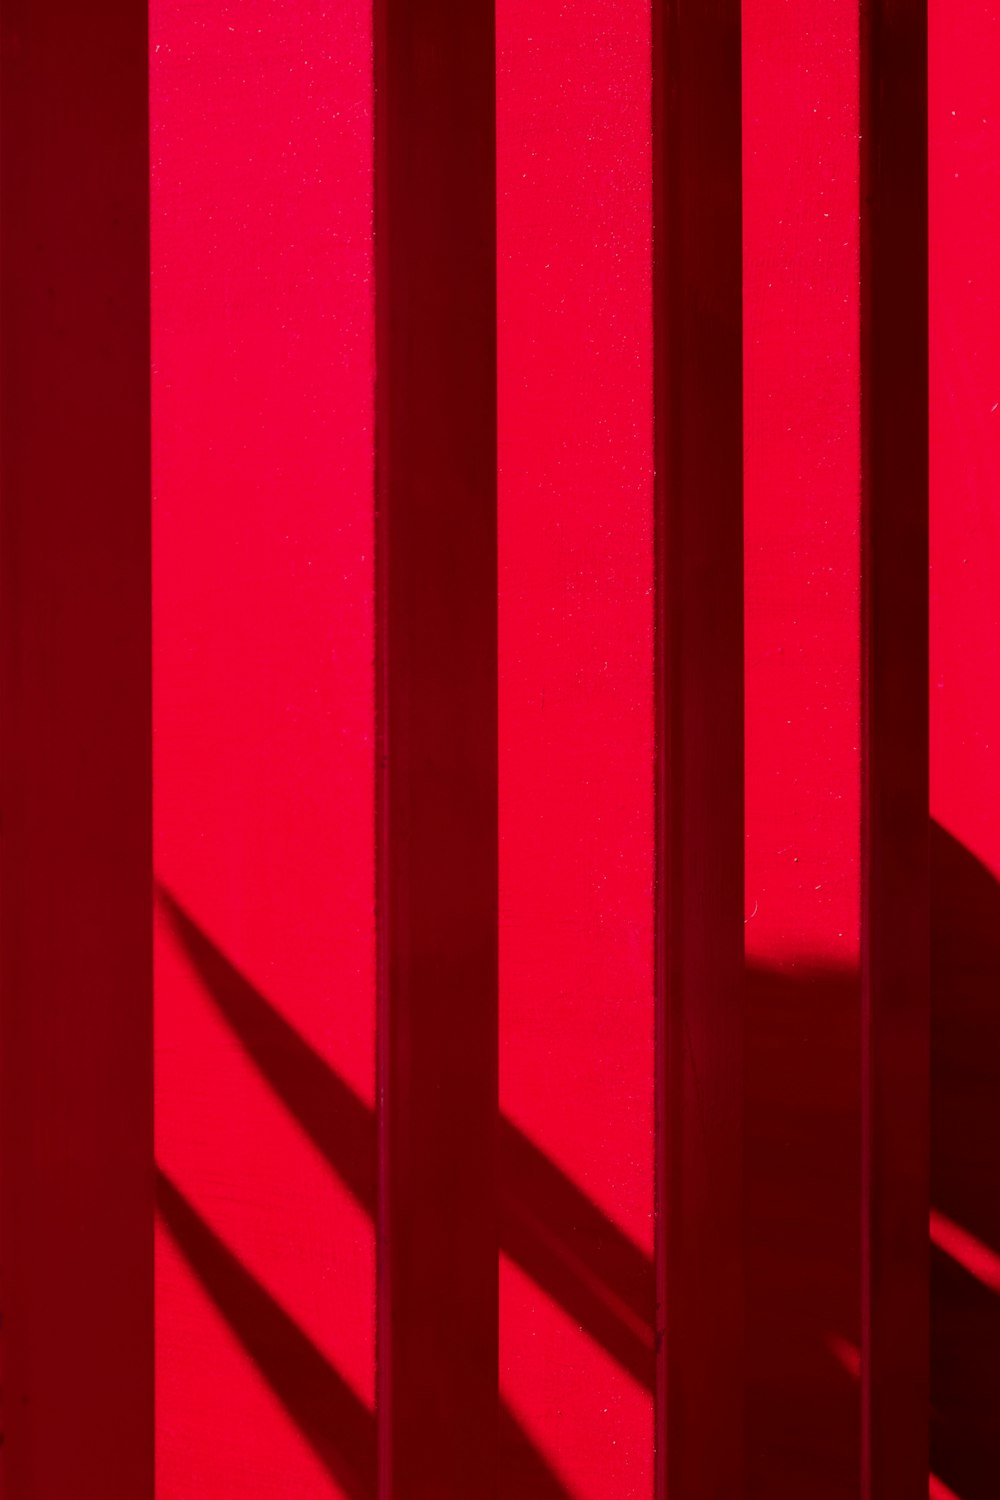 La sombra de una persona parada frente a una pared roja